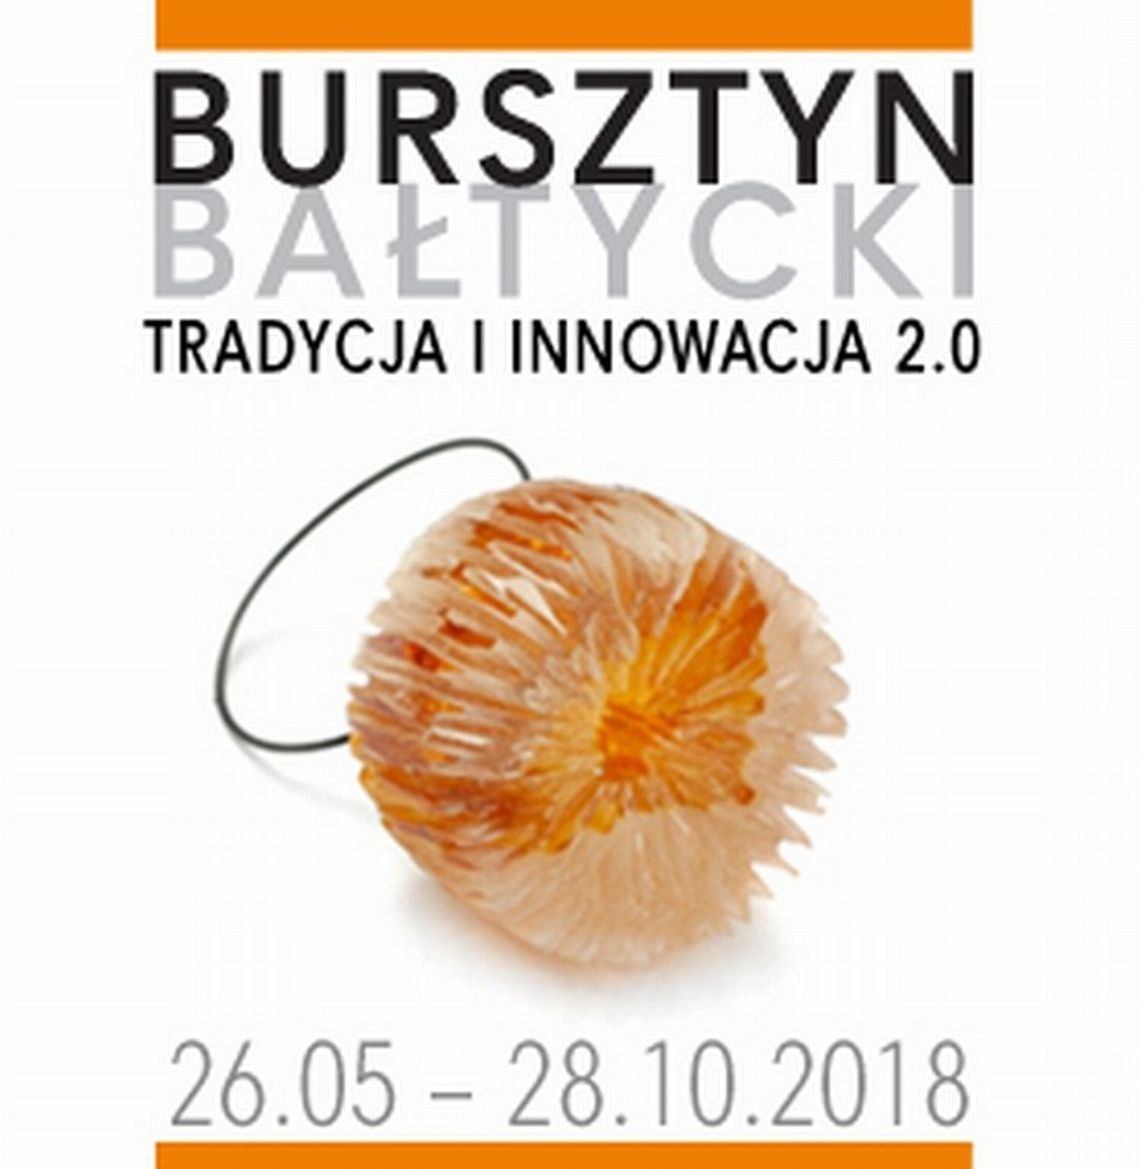 Wystawa „Bursztyn bałtycki. Tradycja i innowacja 2.0” w Gdańsku